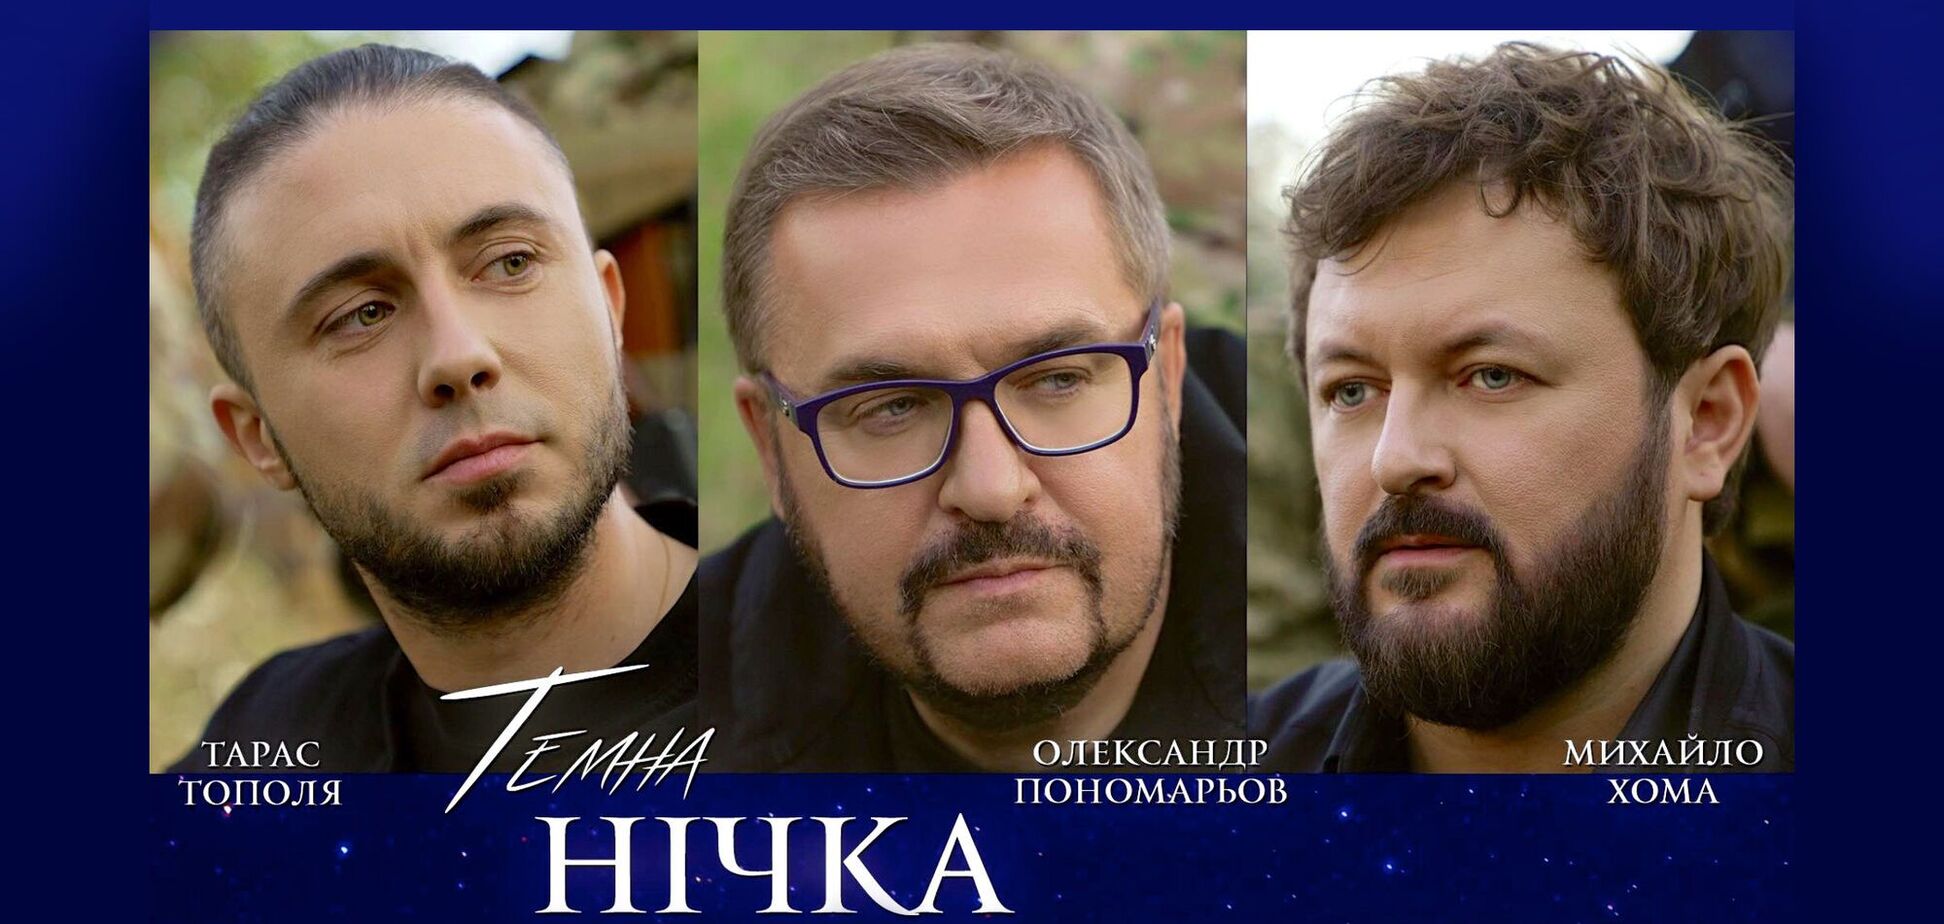 'Темна нічка': Пономарев, Хома и Тополя презентовали песню для военных и о военных